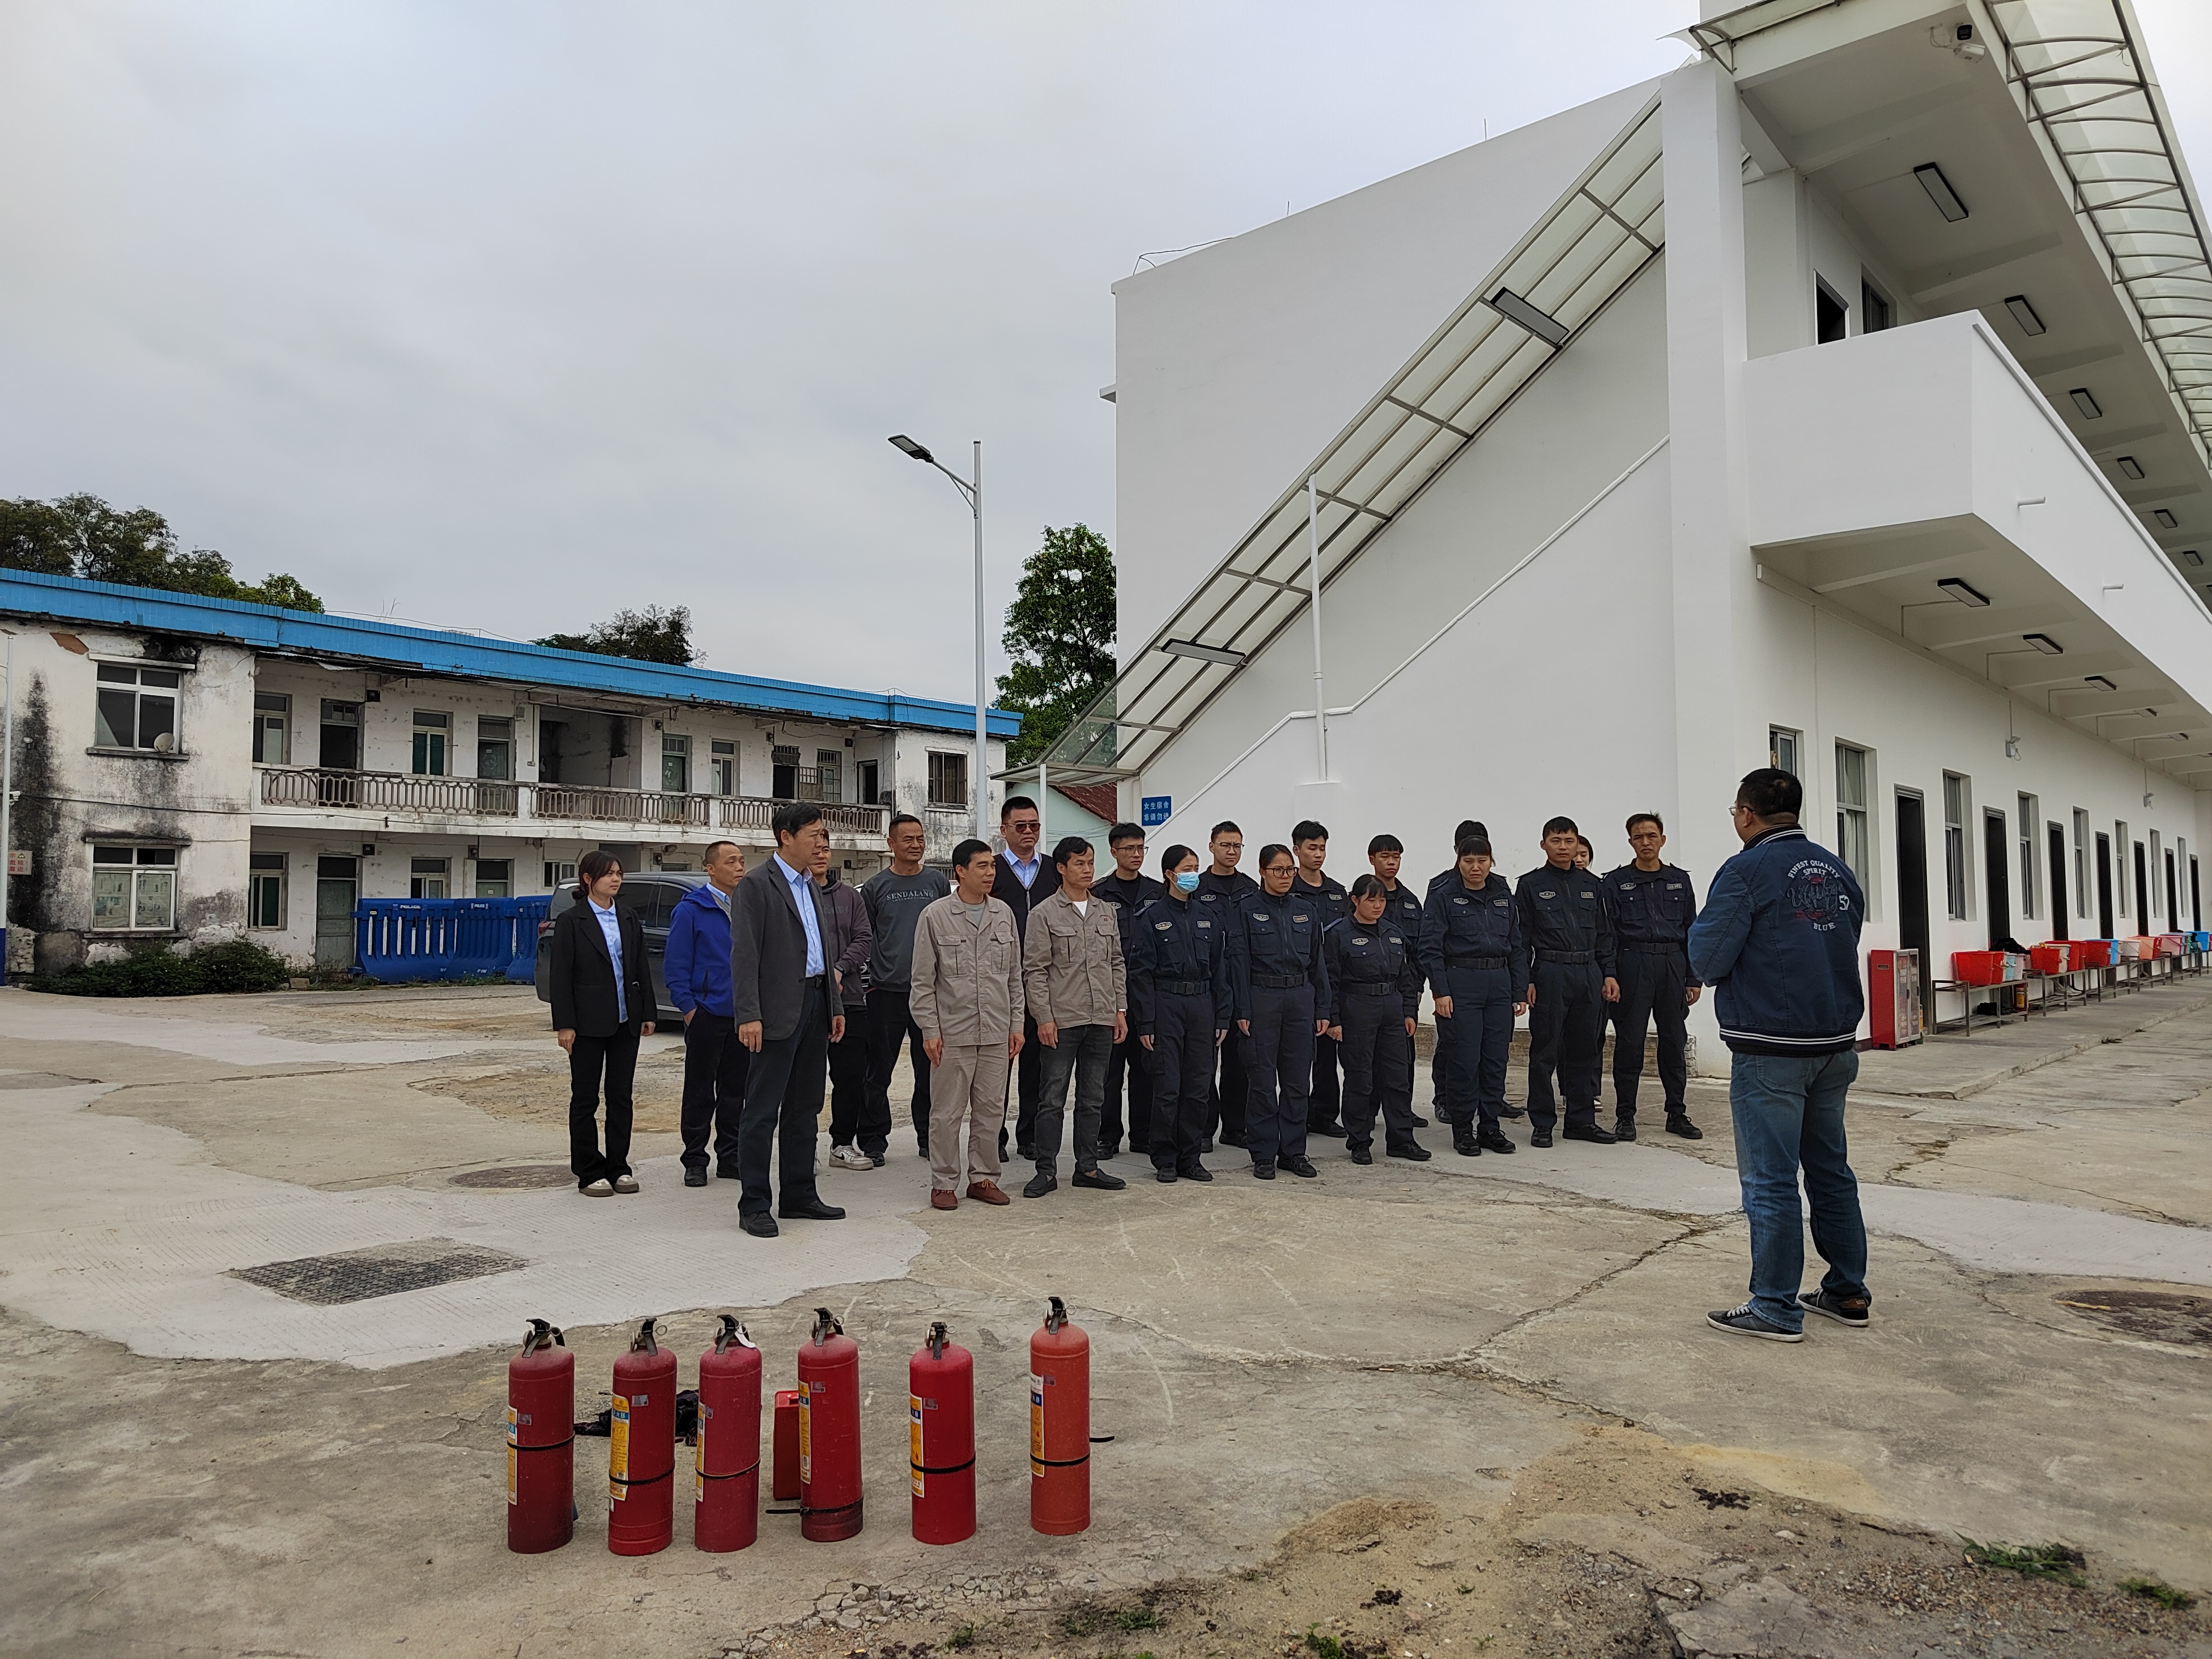 安全始于心 平安践于行 ——广州市总保安服务有限公司开展消防安全培训活动